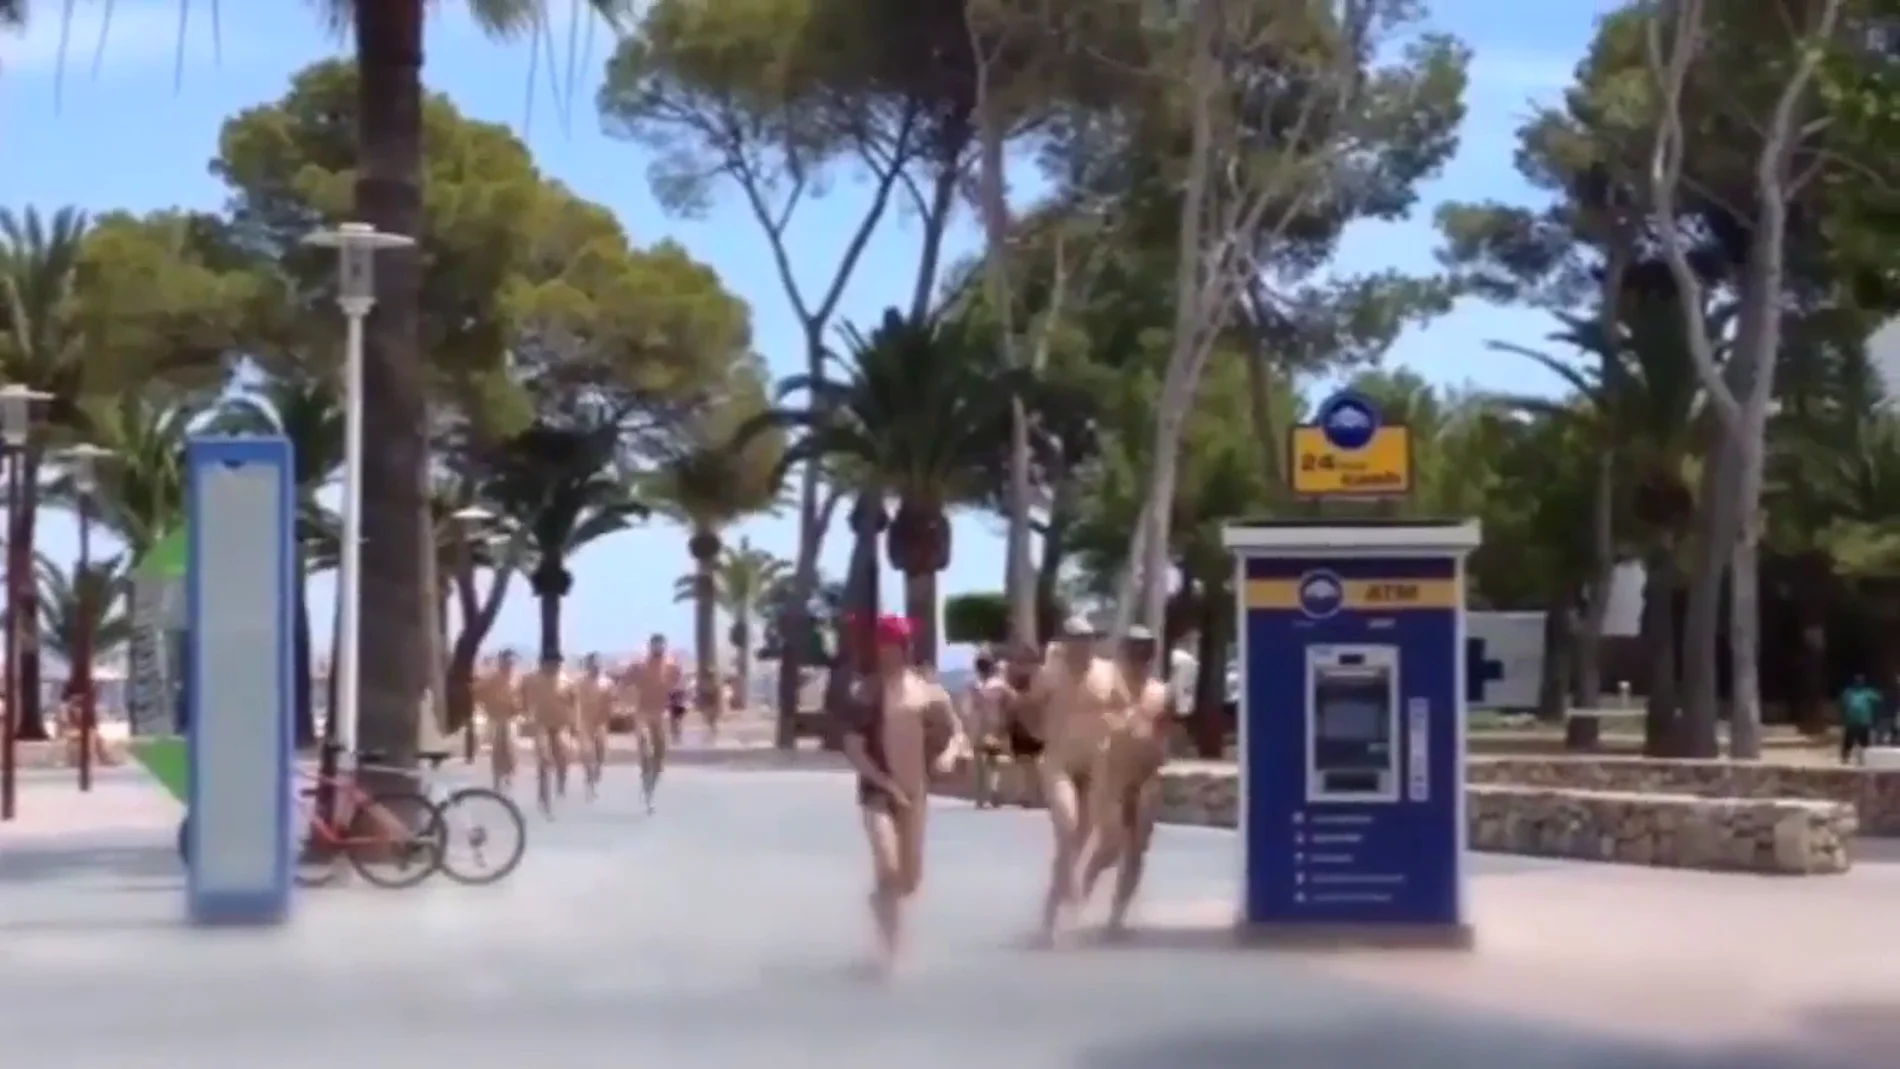 Los turistas desnudos corriendo por las calles de Magaluf